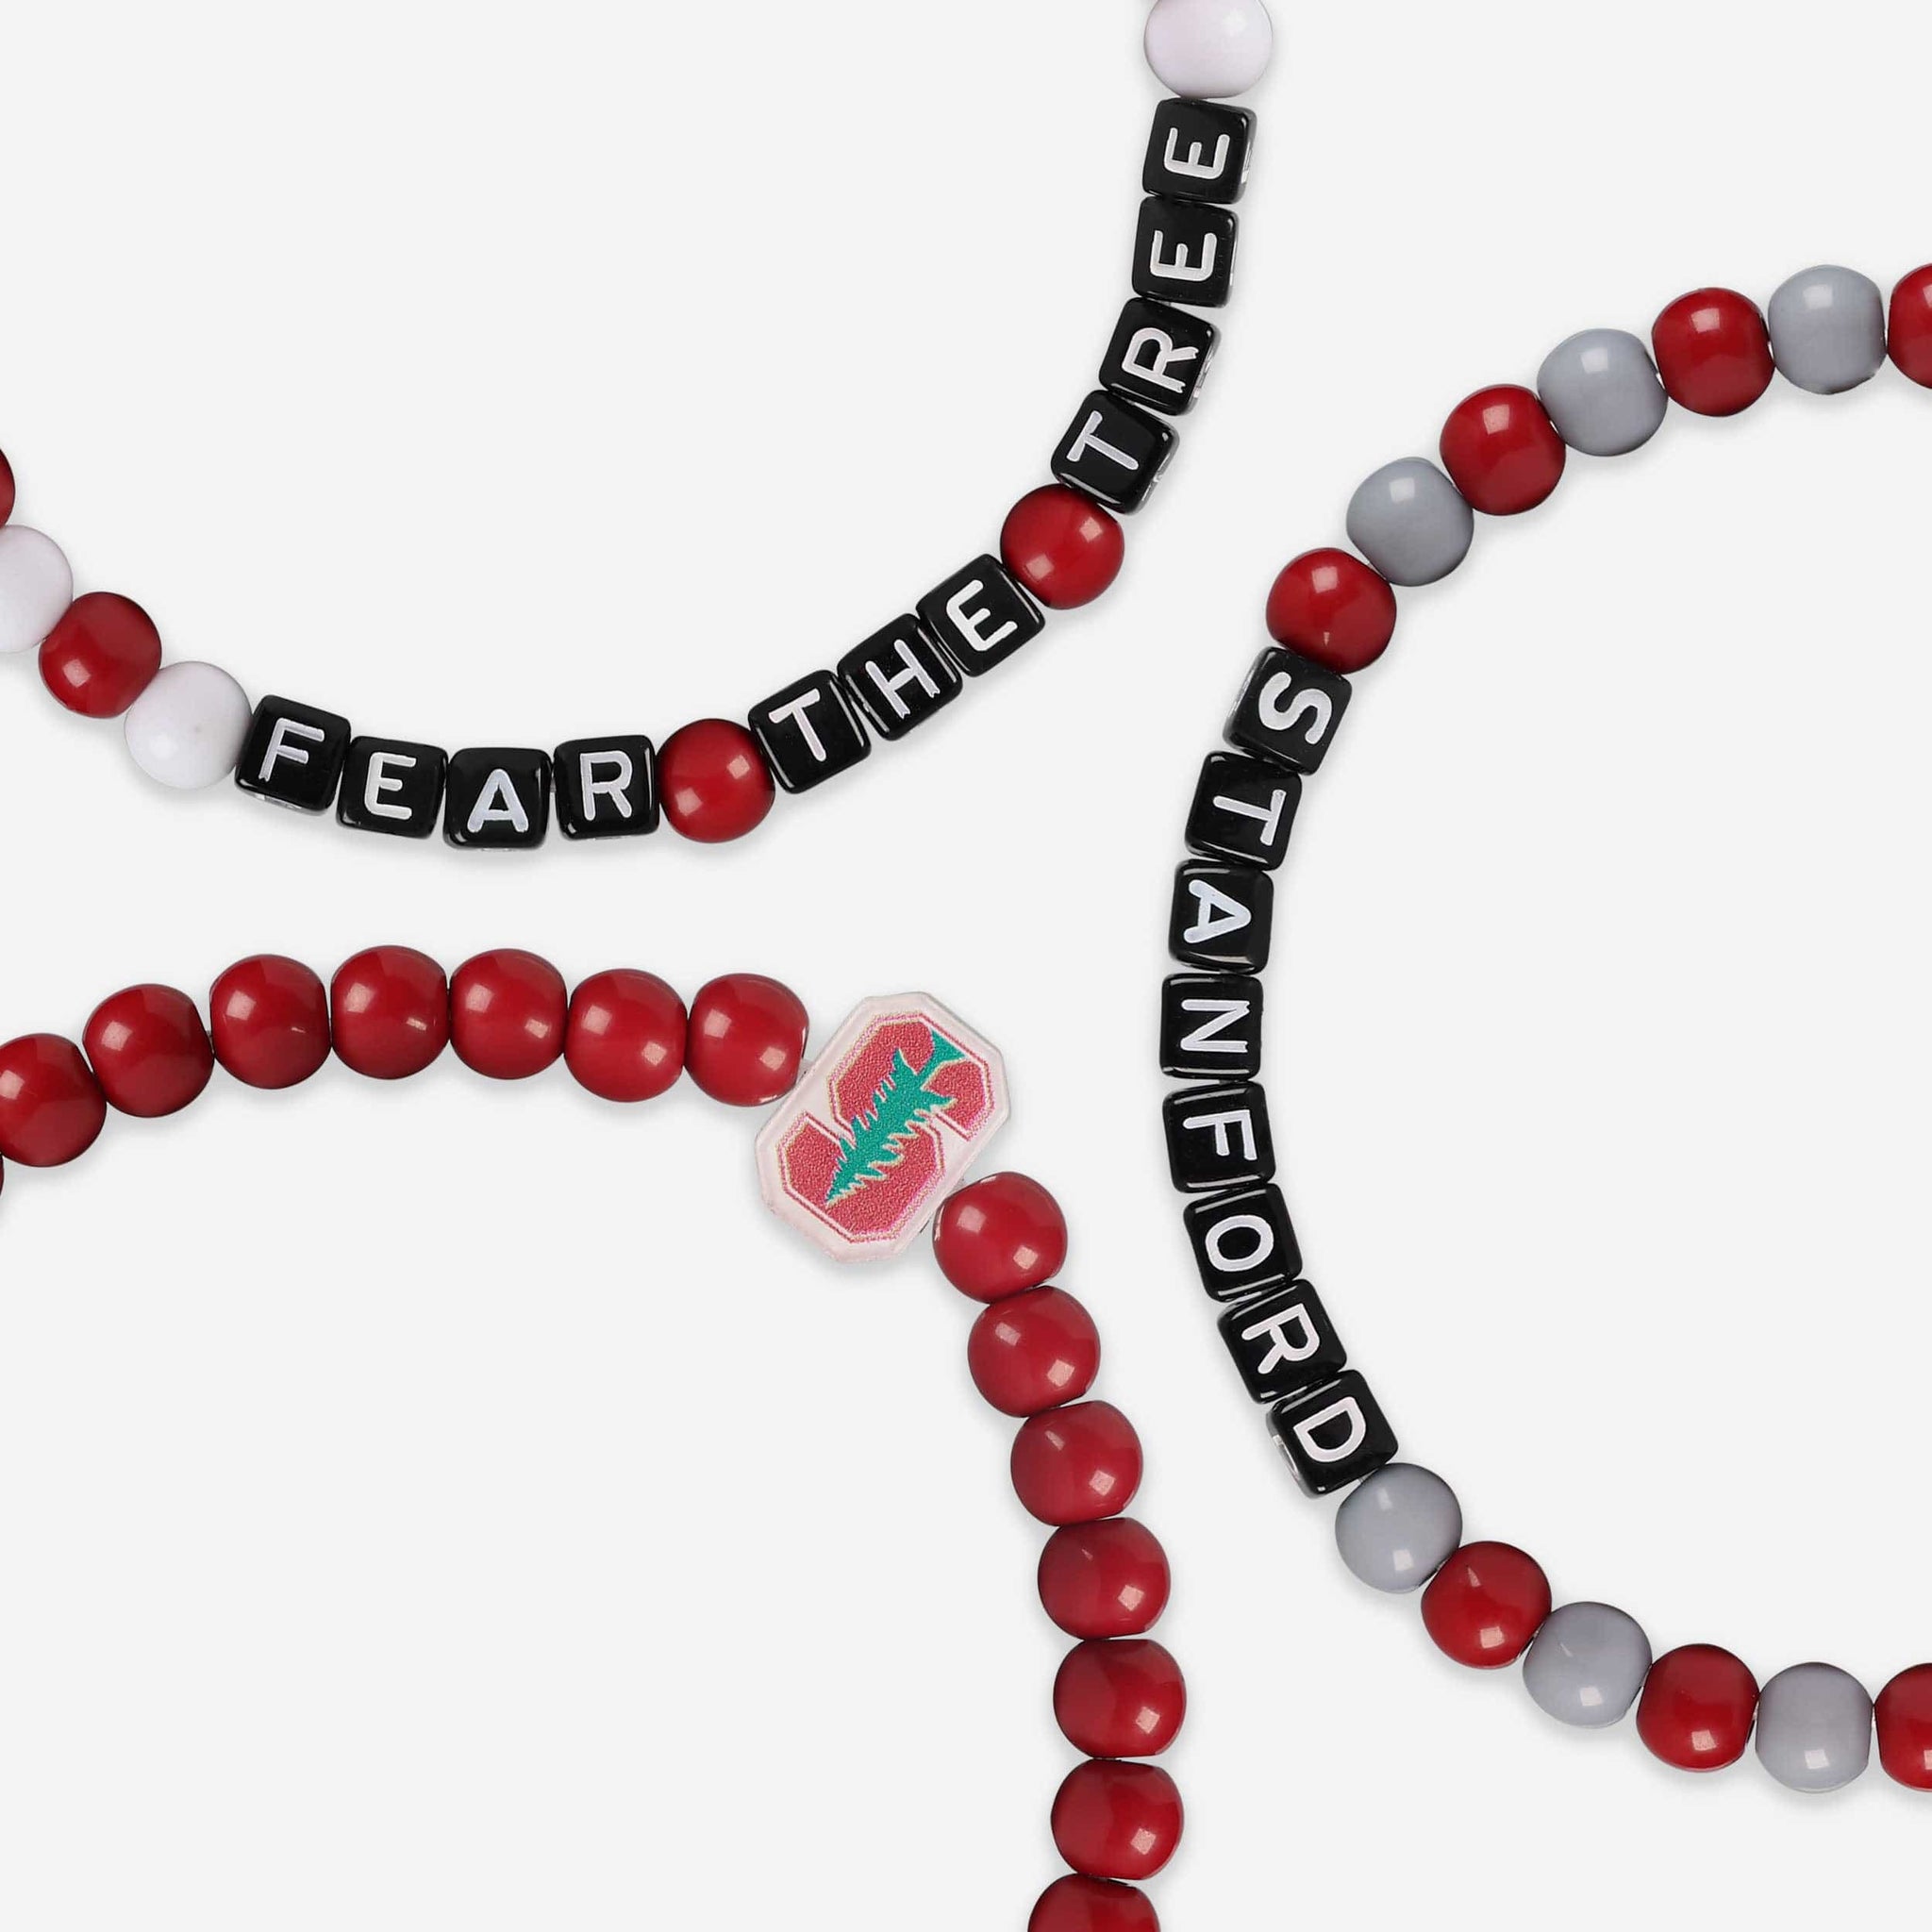 St. Louis Cardinals Beads, Cardinals Bead Necklace